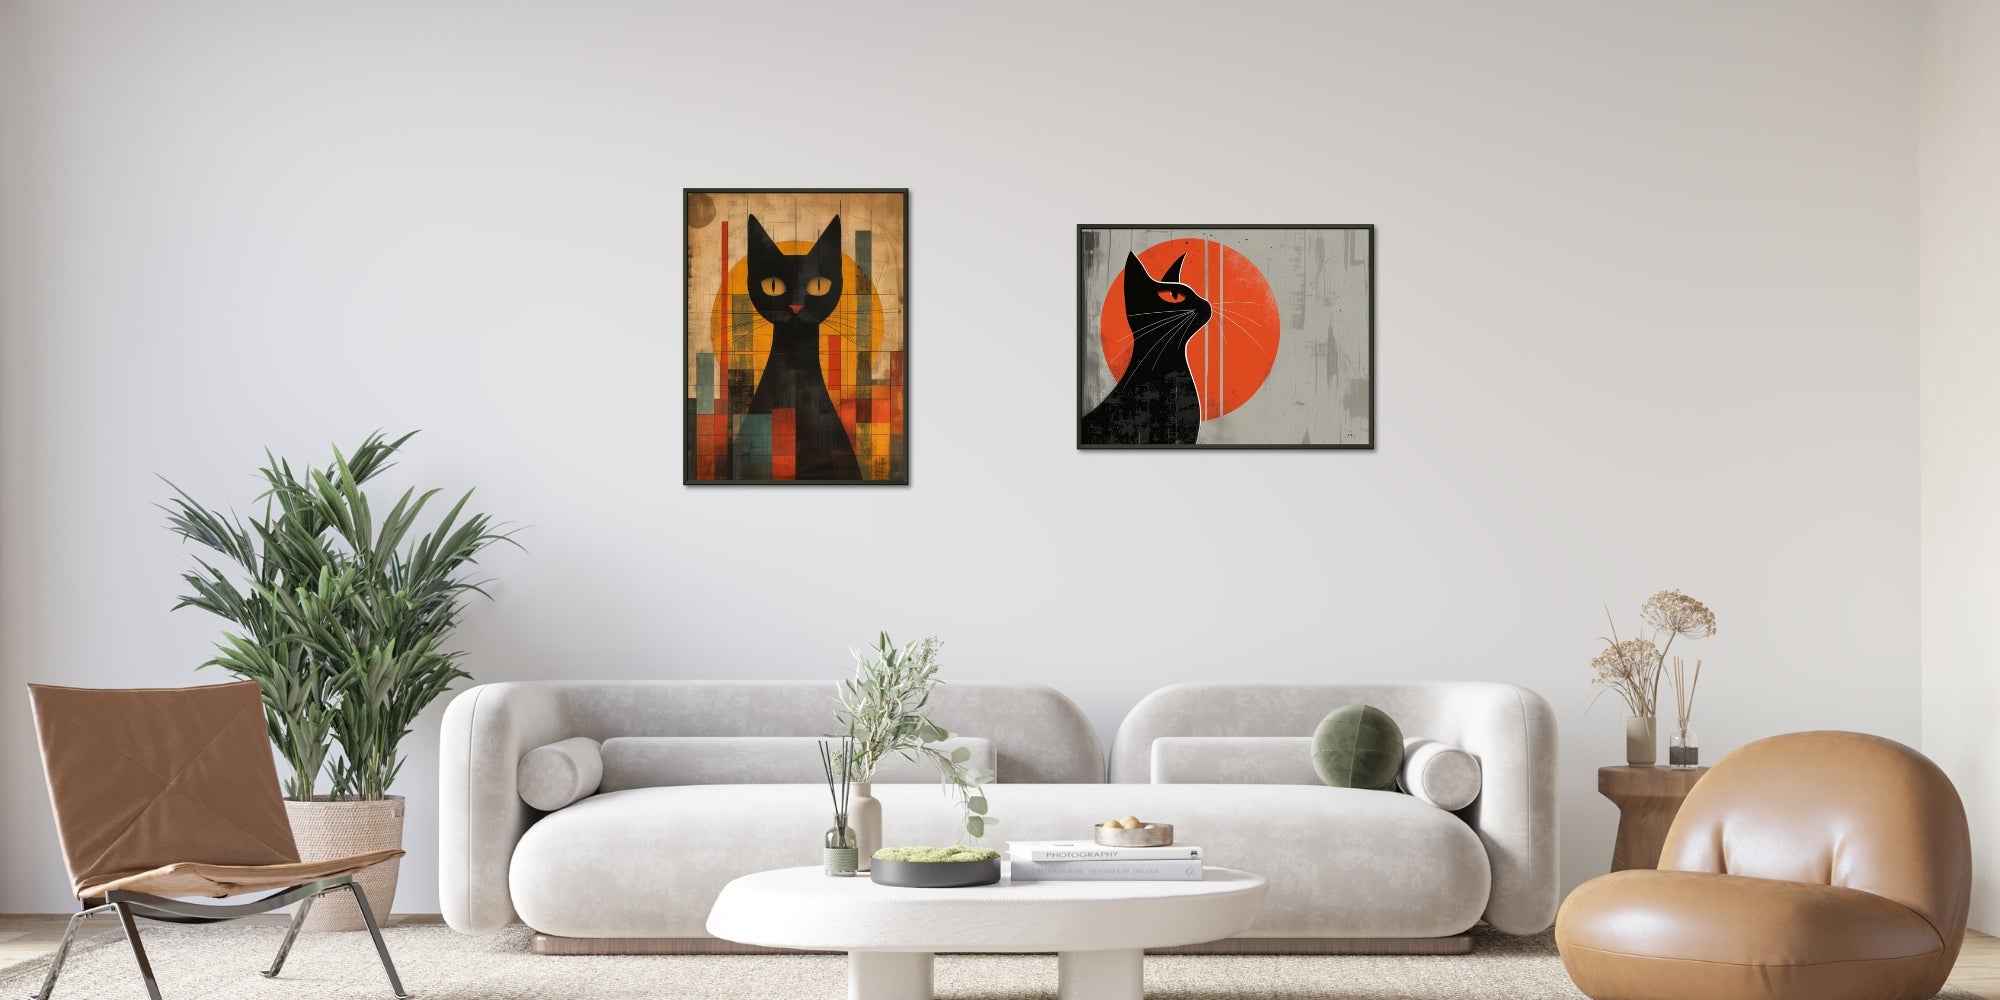 posters enmarcados de gatos